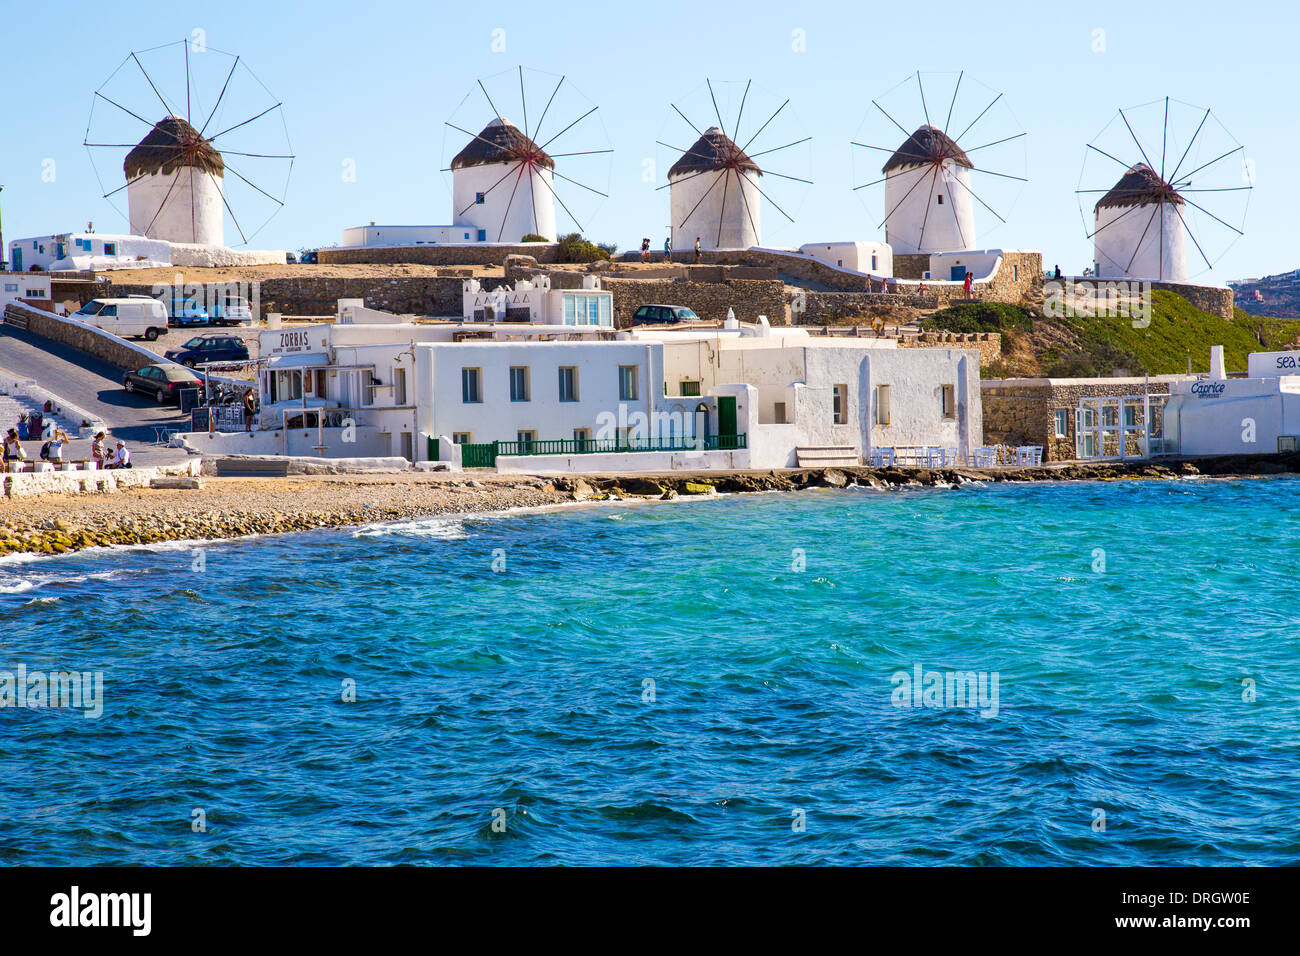 Les moulins à vent de Mykonos, Cyclades Grèce Banque D'Images